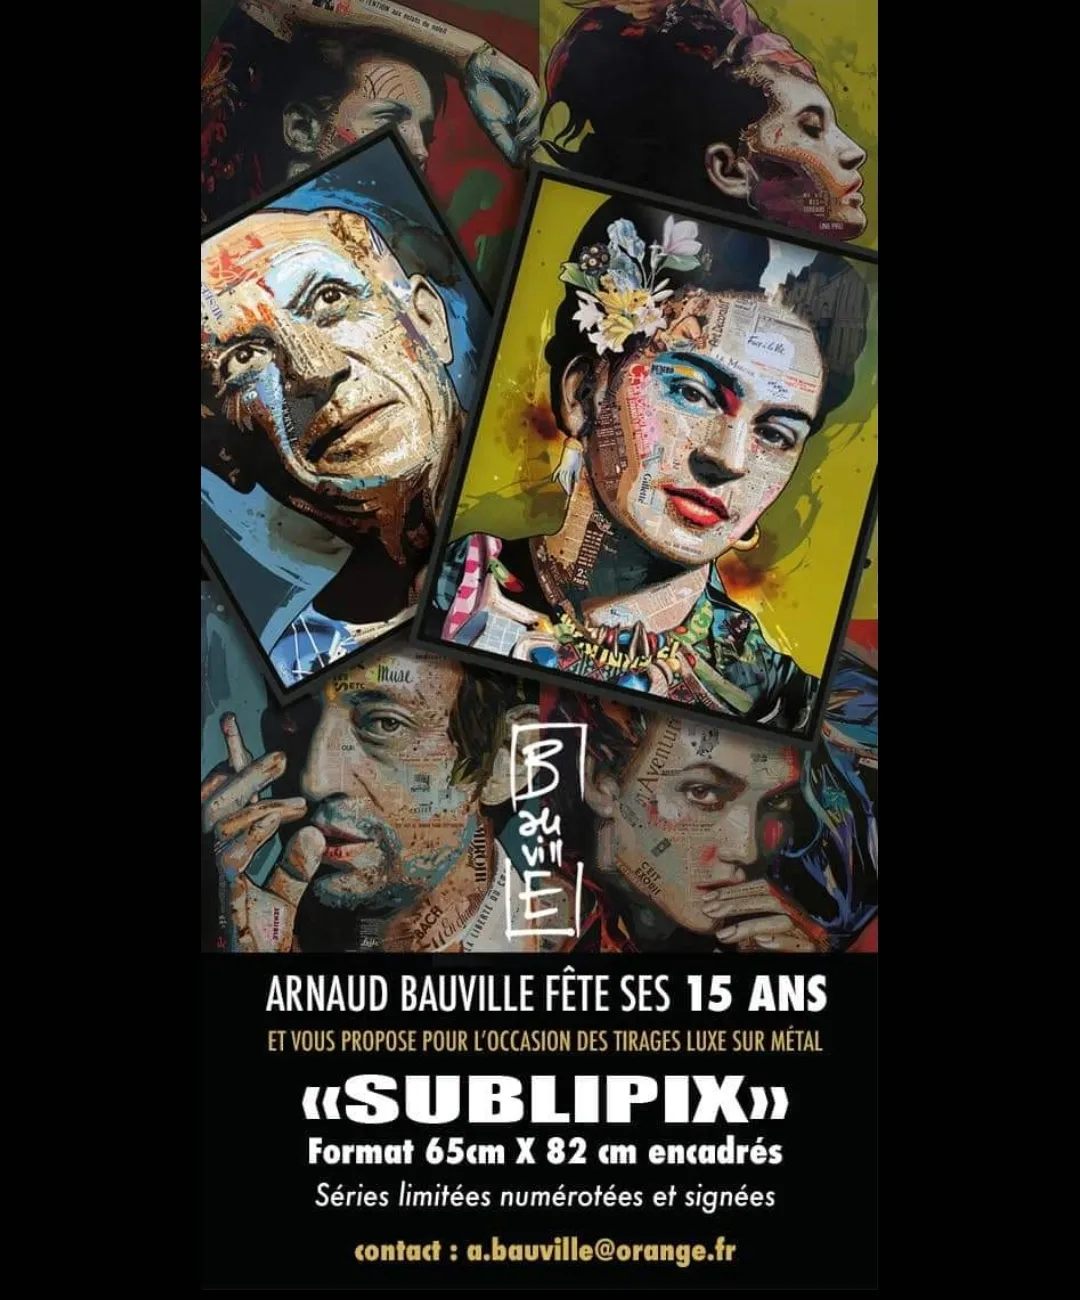 Impression des toiles d'Arnaud Bauville sur Sublipix (82x65)